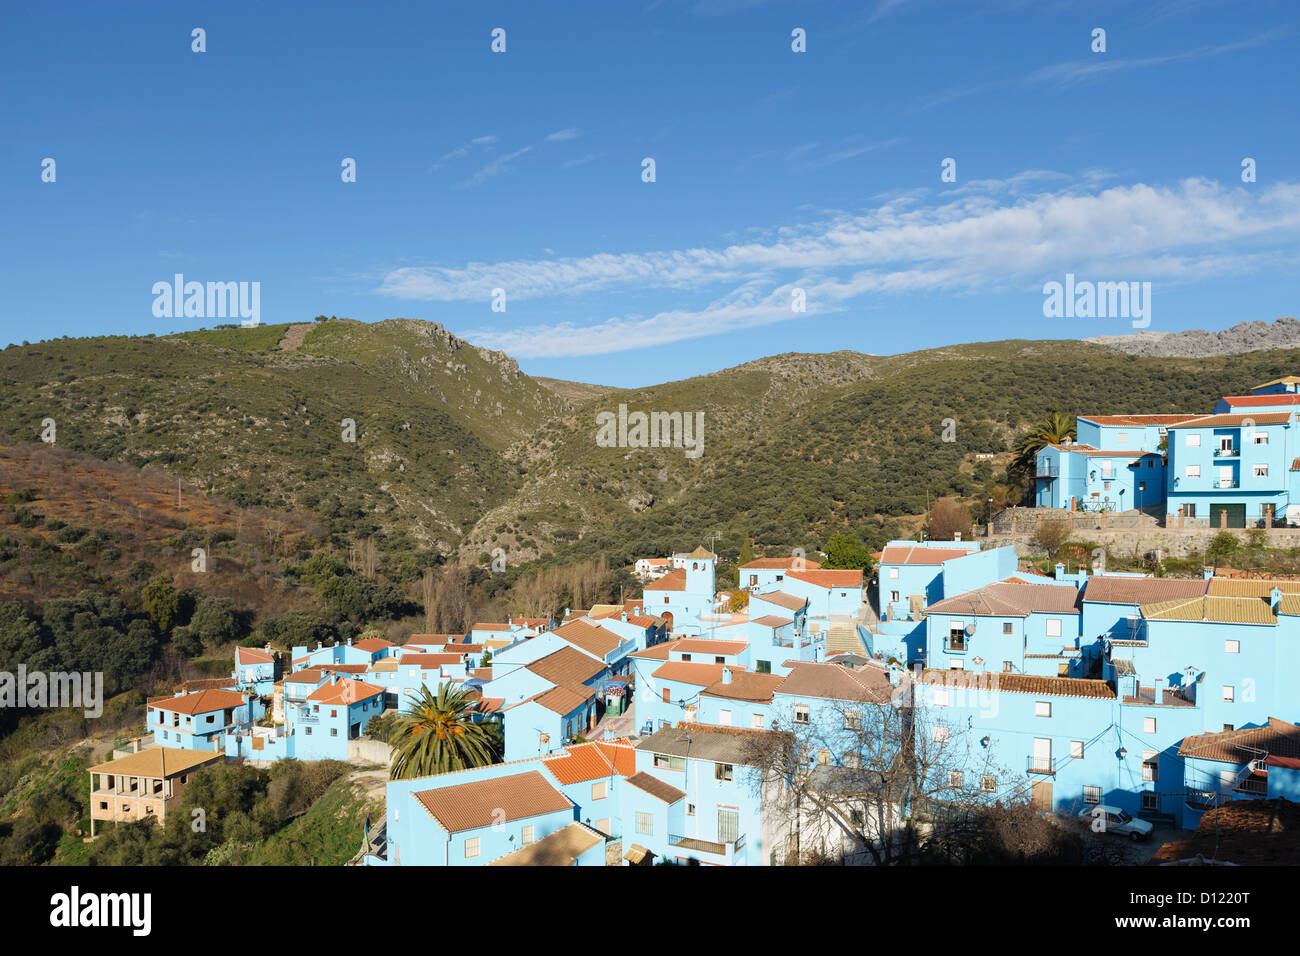 Ein Dorf, zur Förderung der 3D Film-Version von die Schlümpfe blau lackiert; Juzcar Malaga Spanien Stockfoto